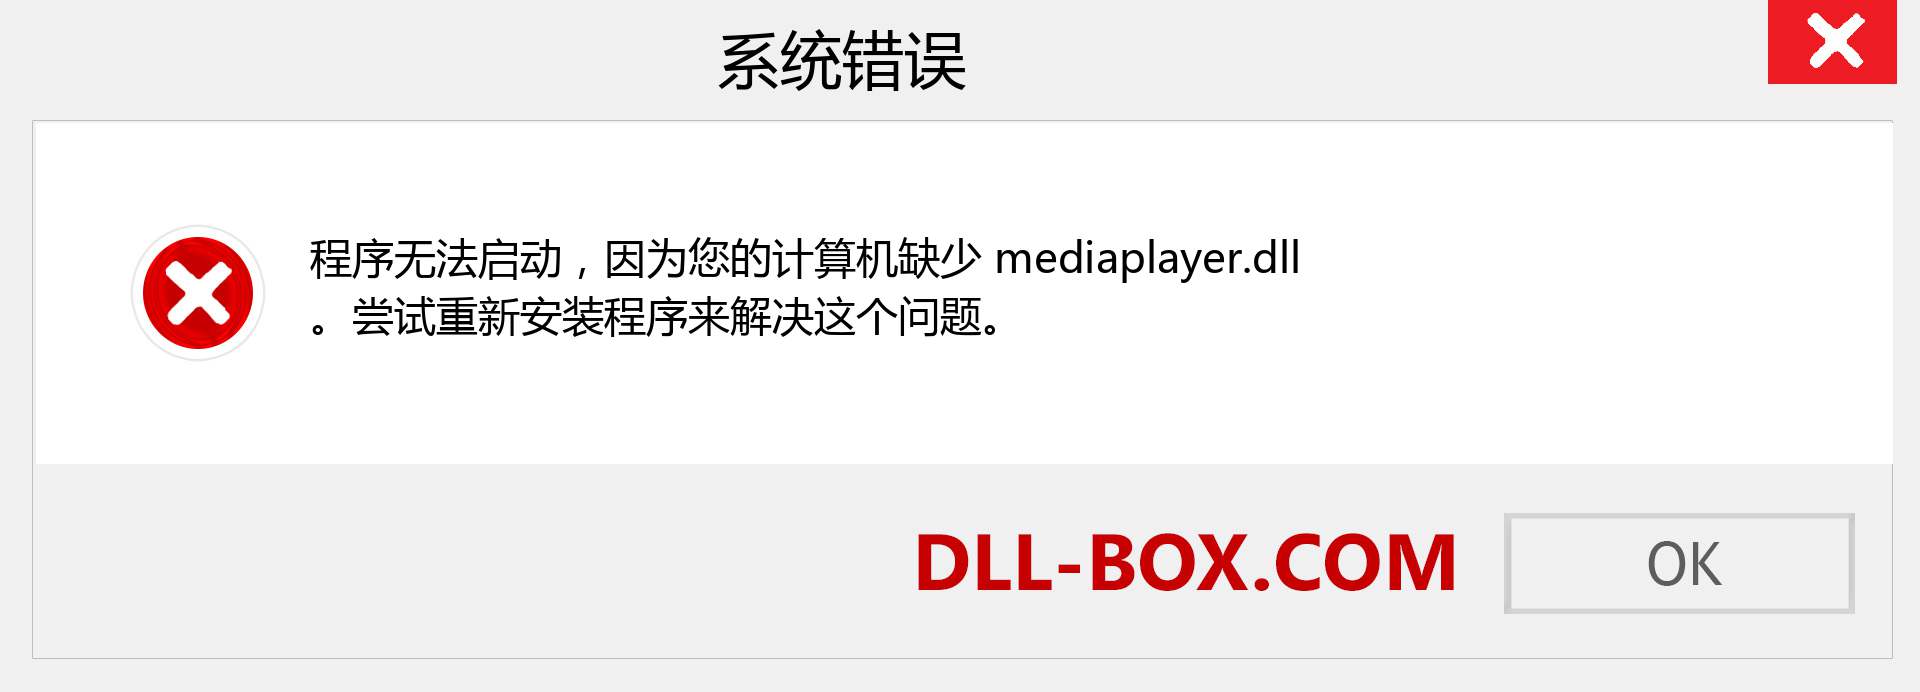 mediaplayer.dll 文件丢失？。 适用于 Windows 7、8、10 的下载 - 修复 Windows、照片、图像上的 mediaplayer dll 丢失错误